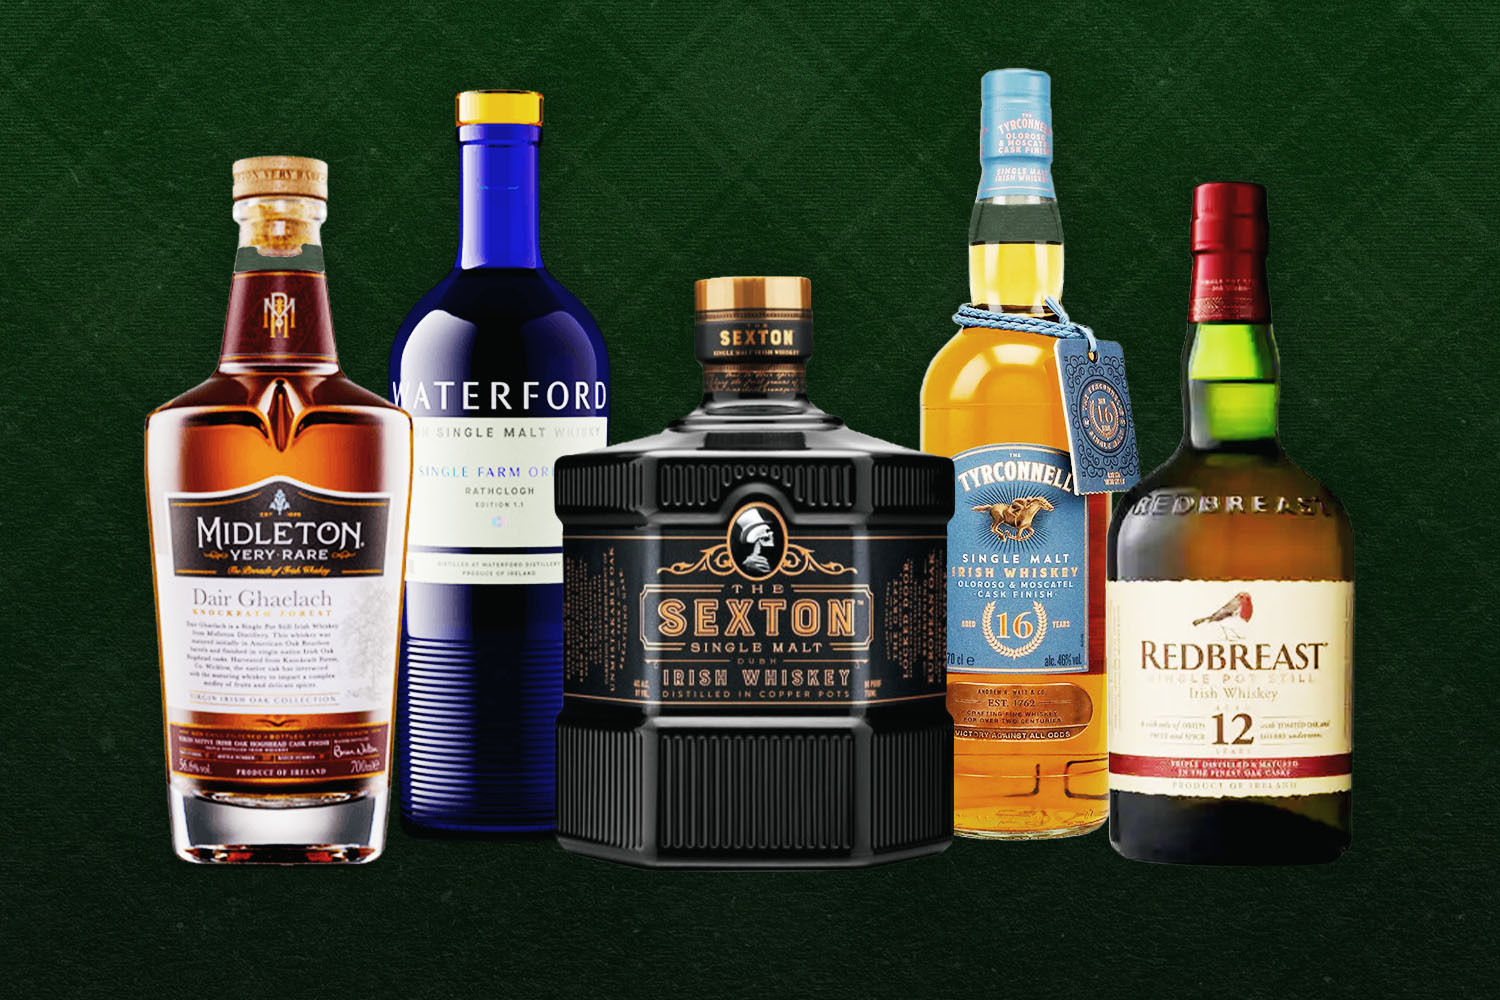 mi-rt-szop-ka-matrac-best-irish-whiskey-brands-szalag-visszafizet-s